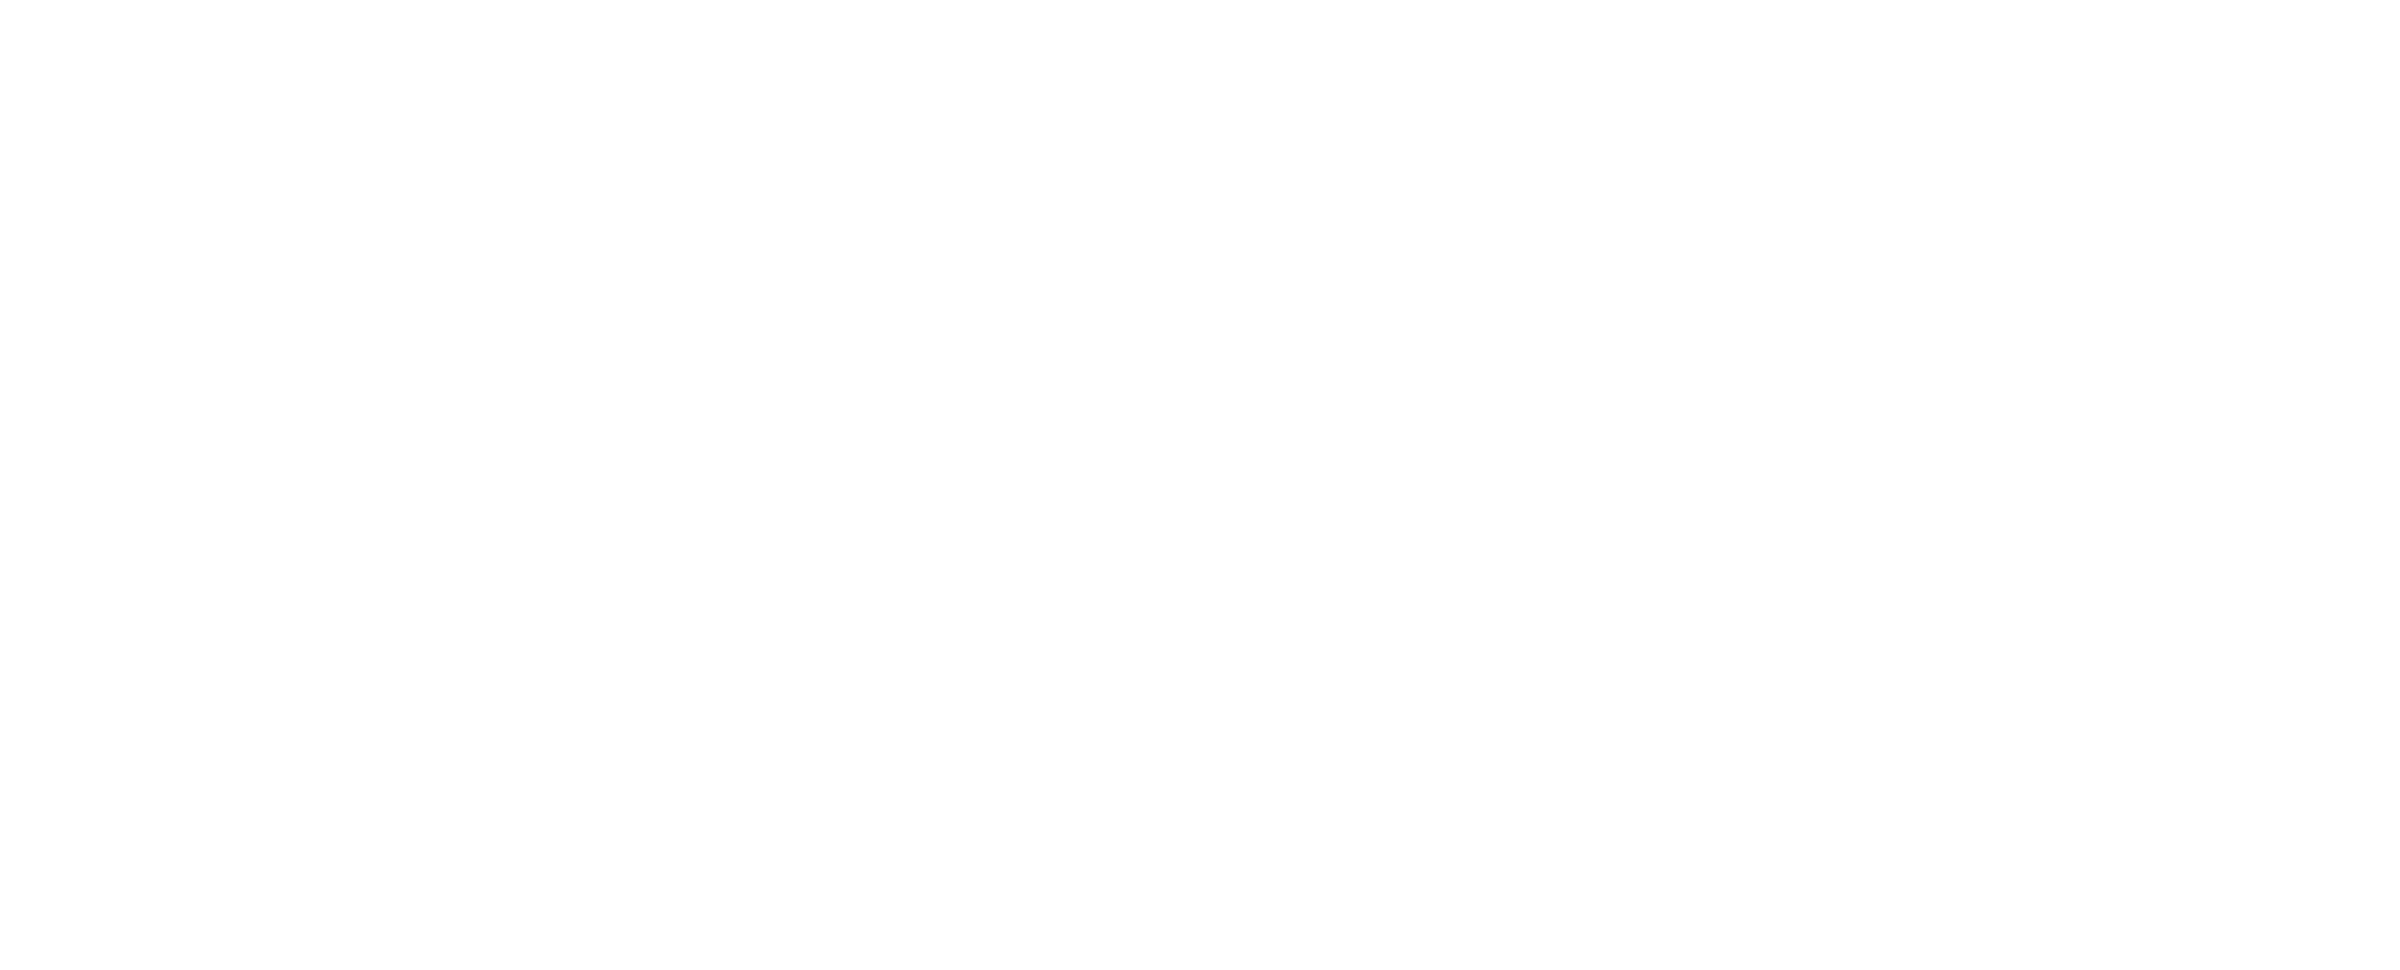 Bing Bing with Logo - Bing Logo PNG Transparent & SVG Vector